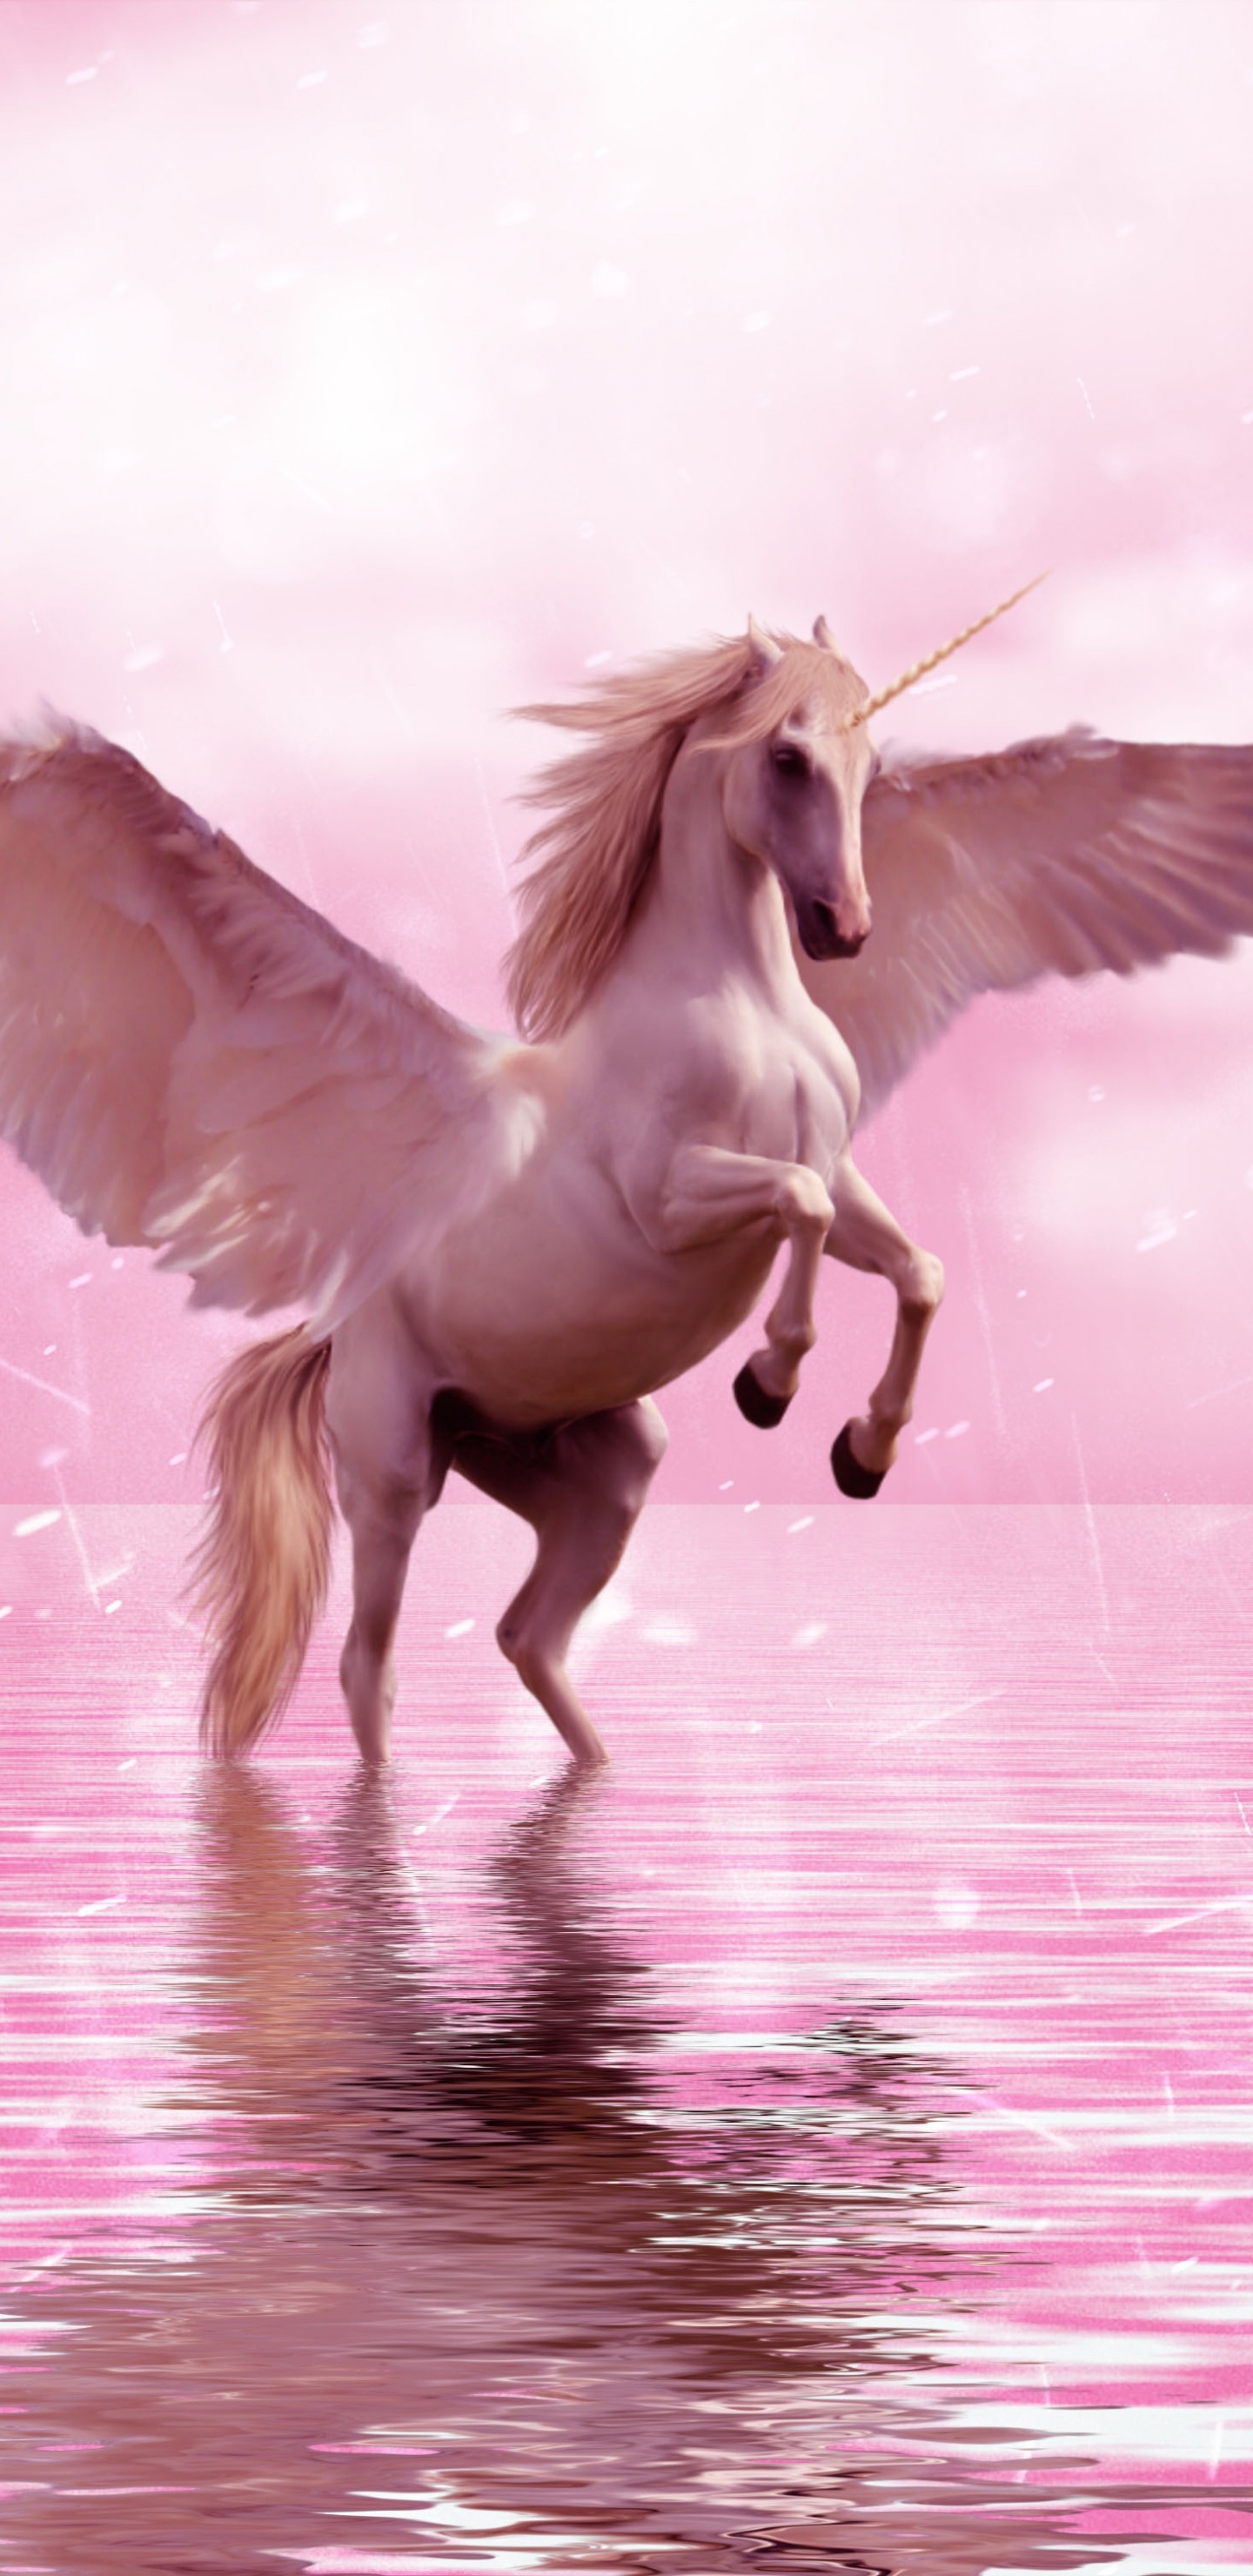 独角兽, 飞马, 翼, 粉红色, 神秘的生物 壁纸 1440x2960 允许